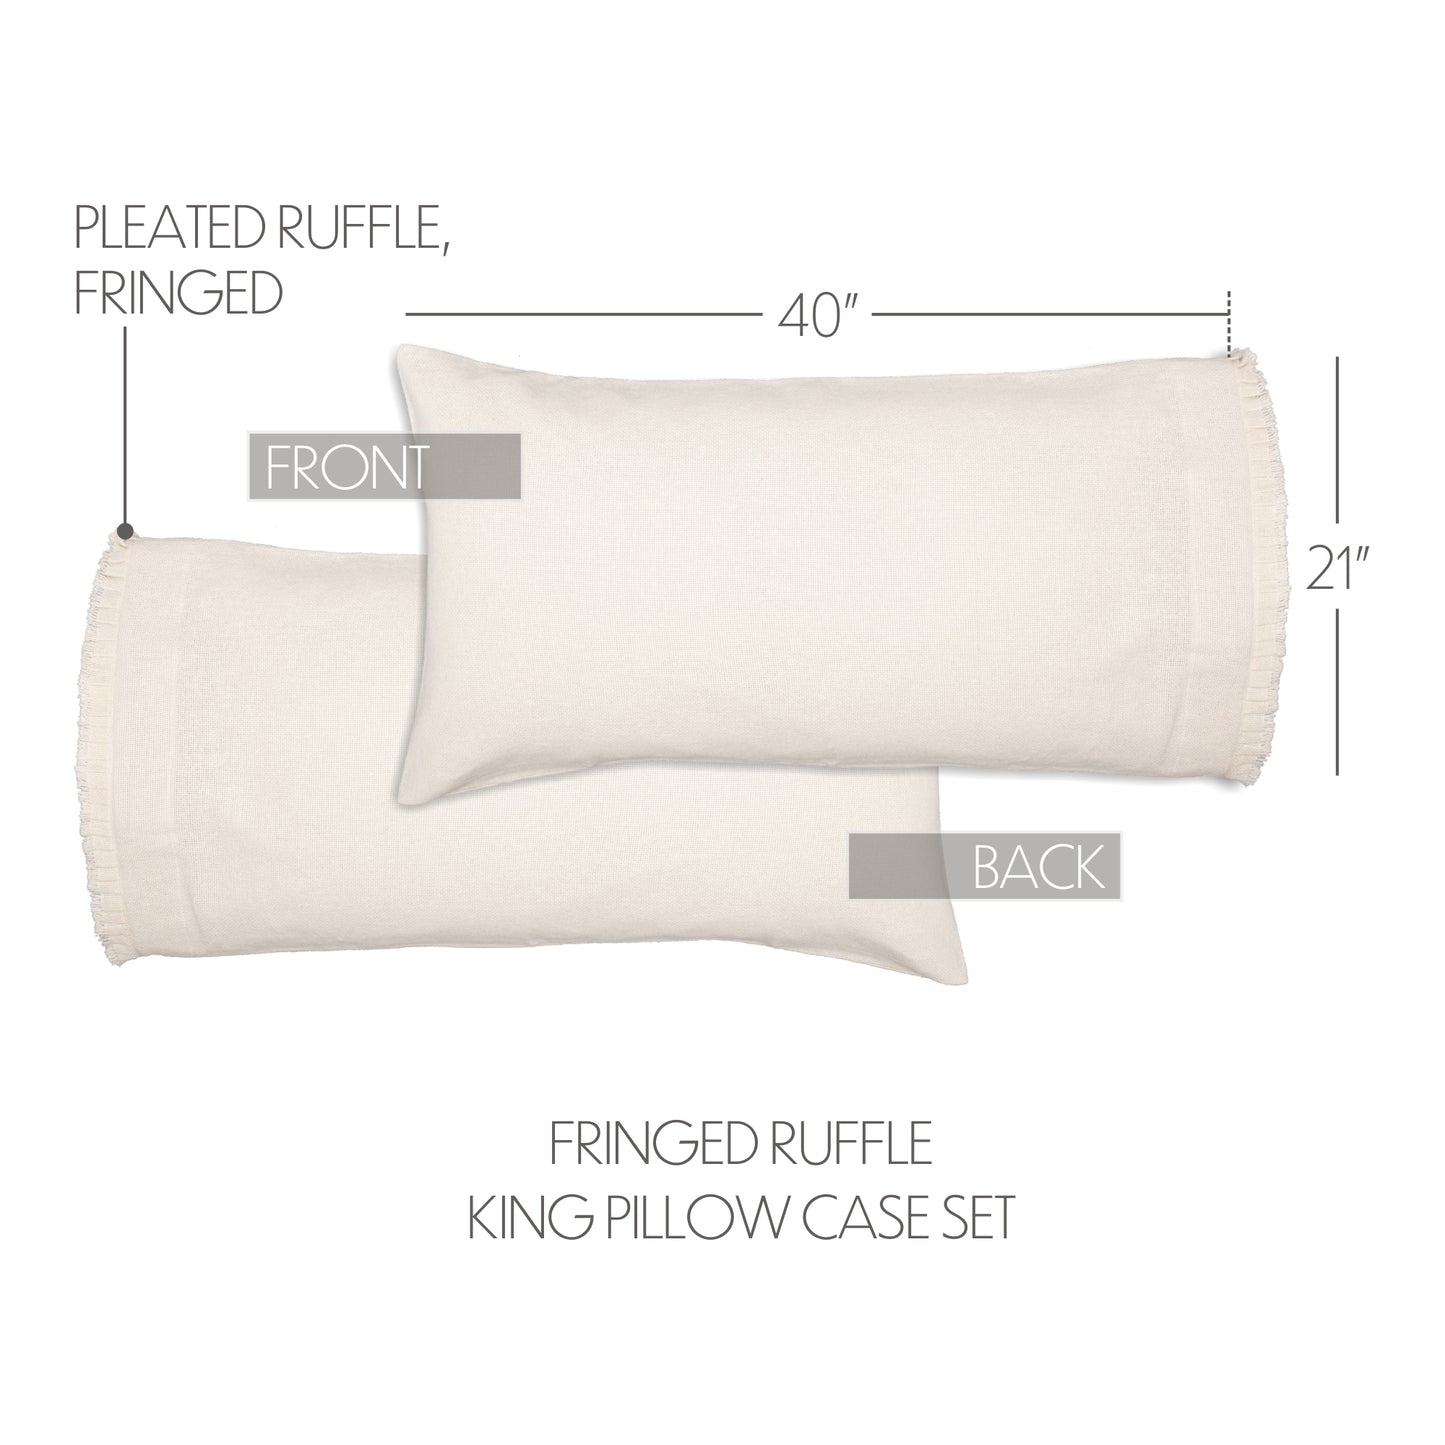 51817-Burlap-Antique-White-King-Pillow-Case-w-Fringed-Ruffle-Set-of-2-21x40-image-1